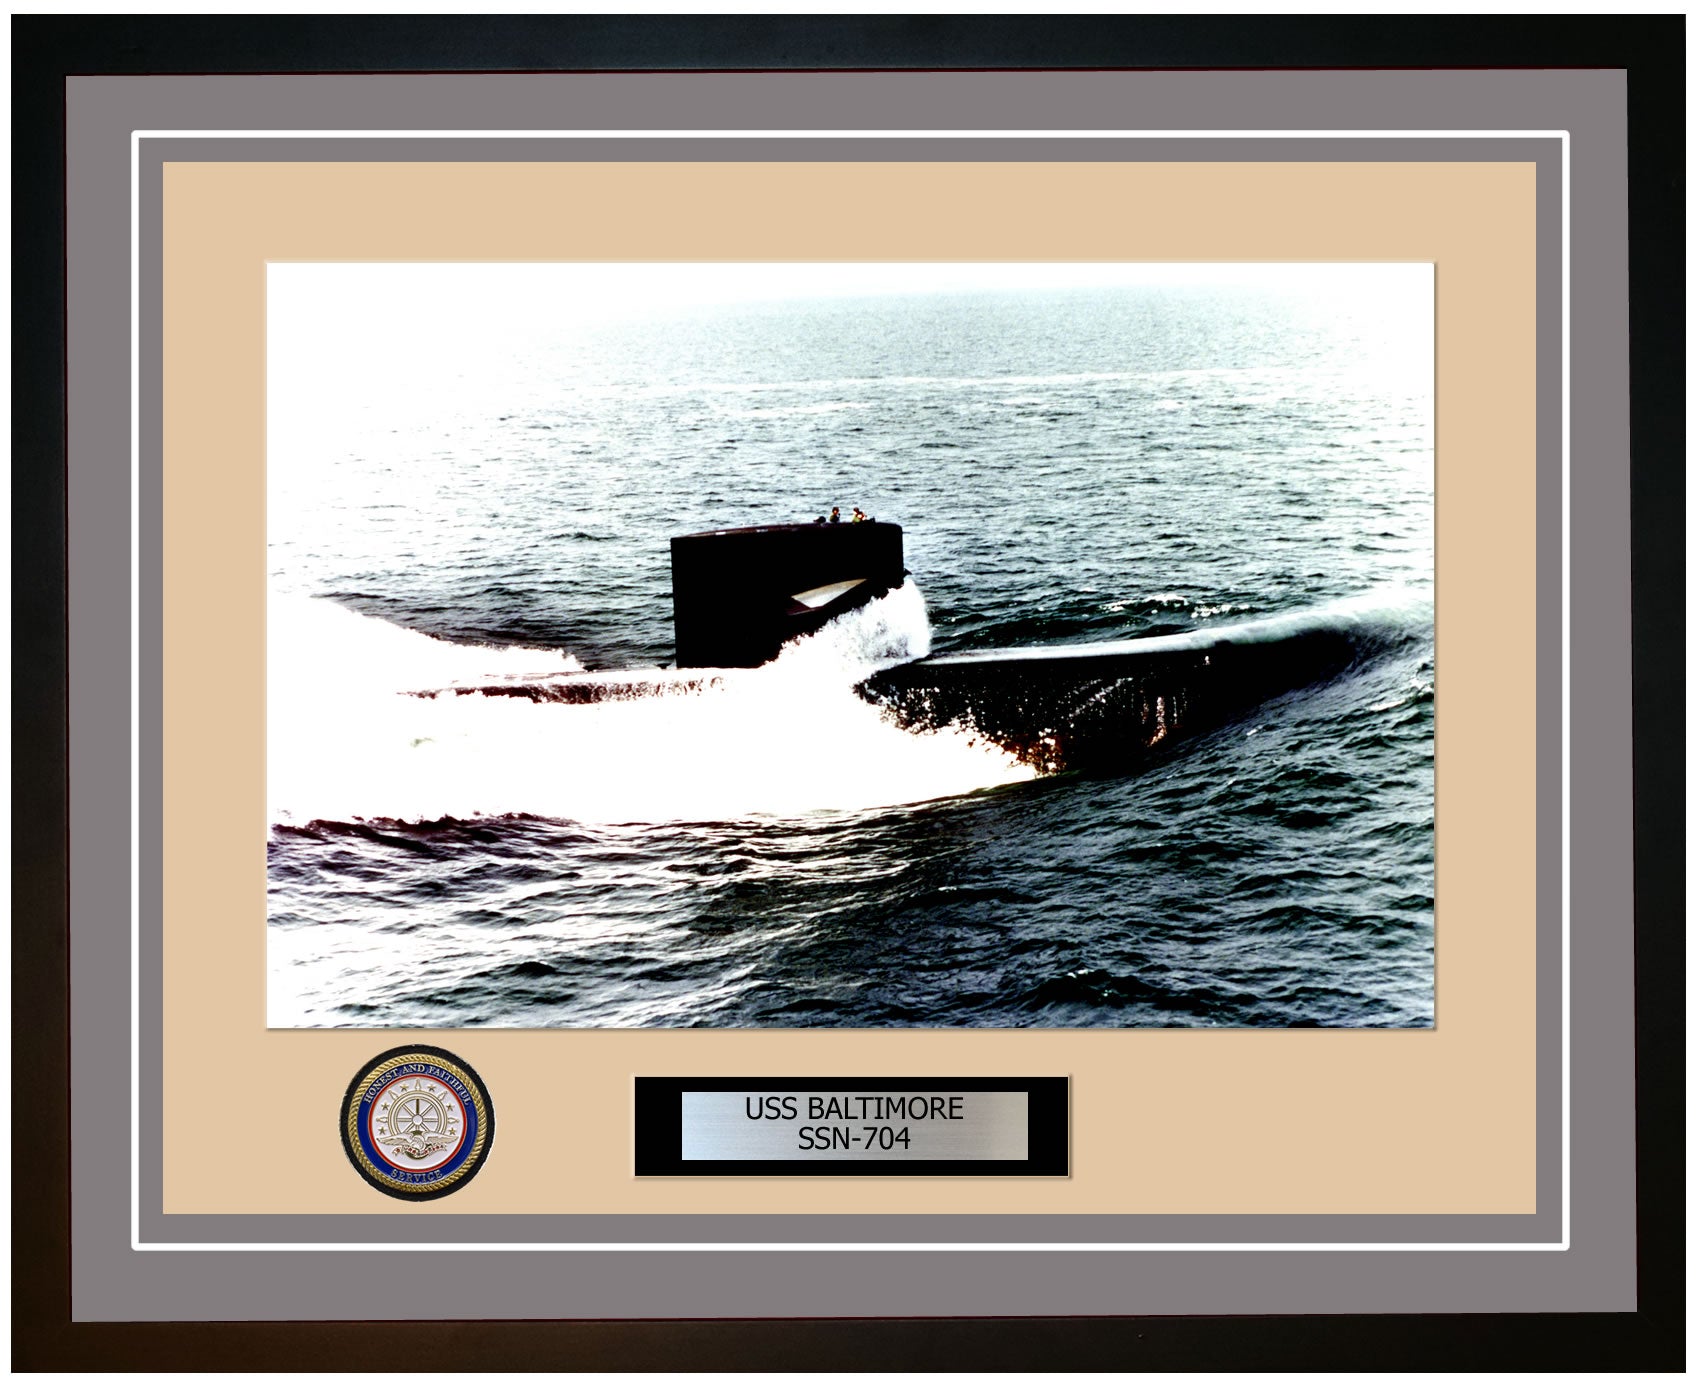 USS Baltimore SSN-704 Framed Navy Ship Photo Grey